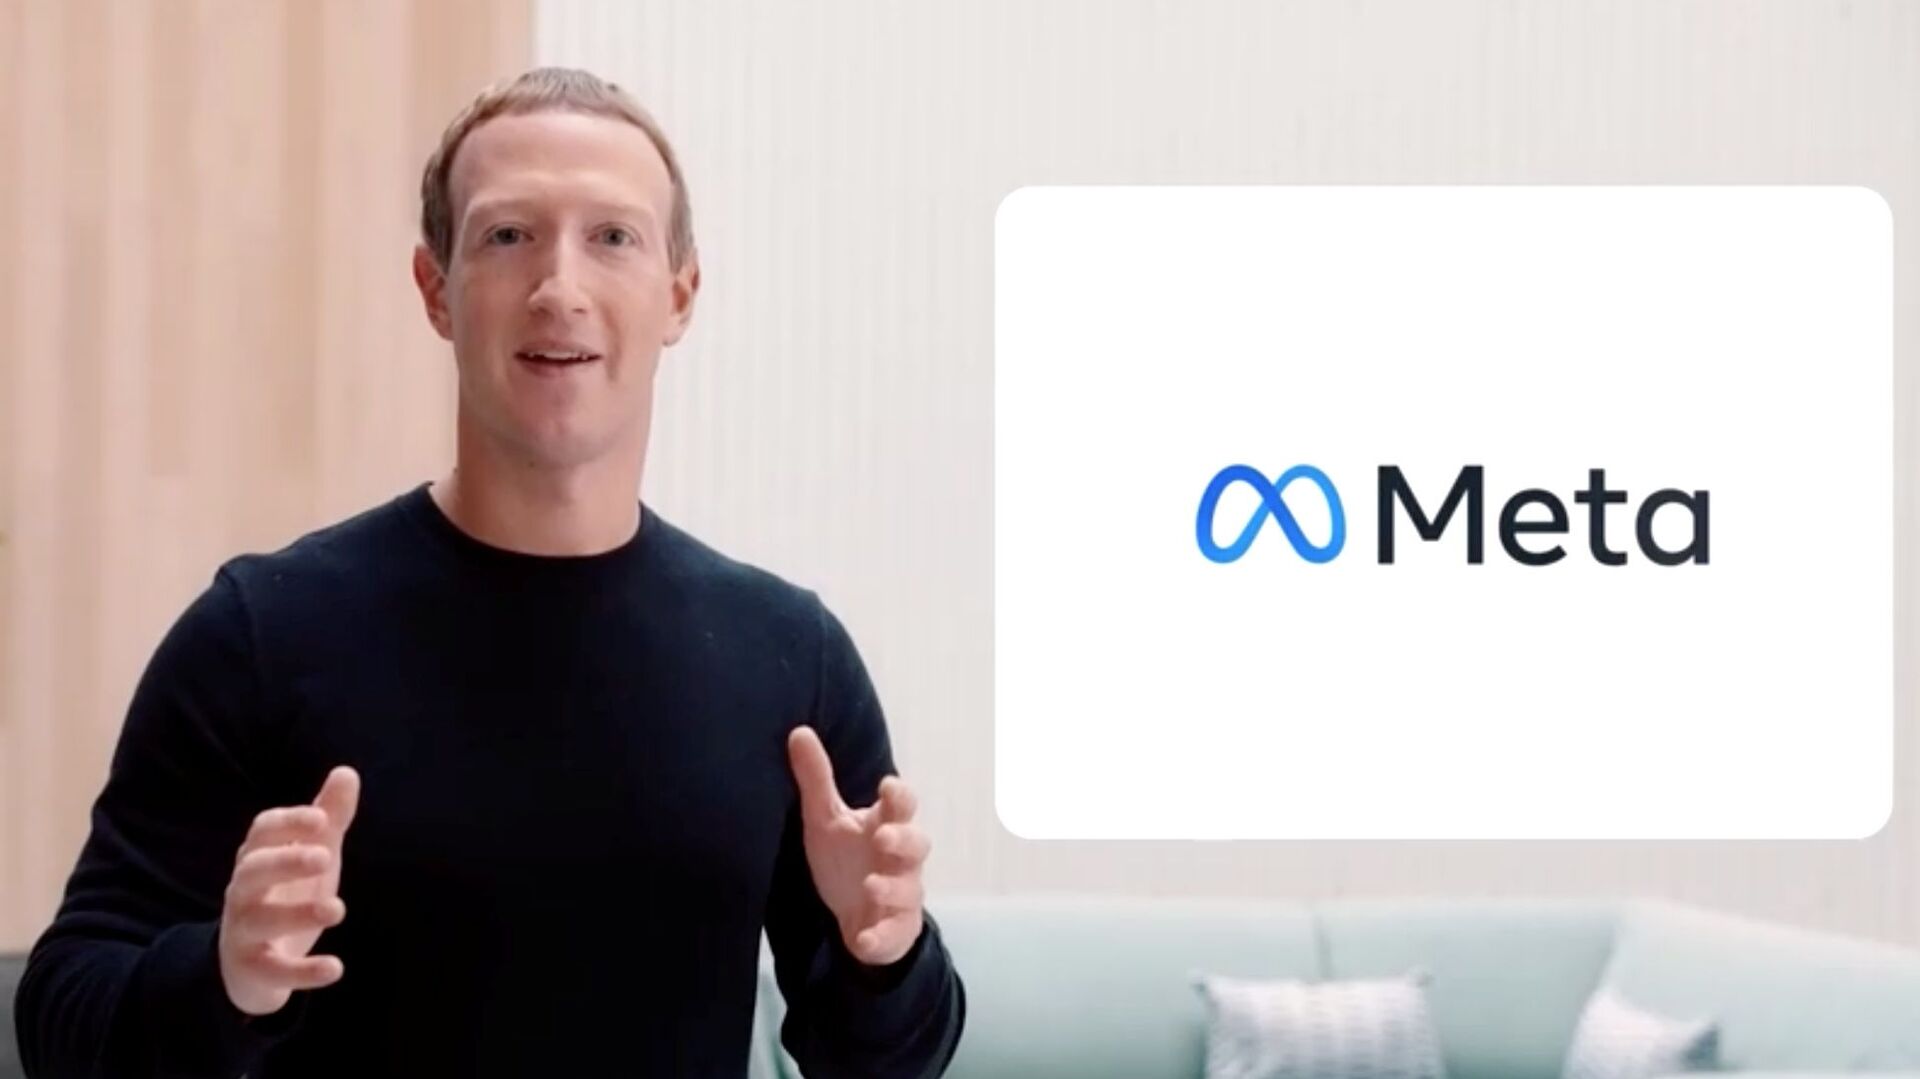 مؤسس شركة فيسبوك مارك زوكربيرغ يغير اسمها إلى ميتا، 28 أكتوبر 2021 - سبوتنيك عربي, 1920, 18.11.2021